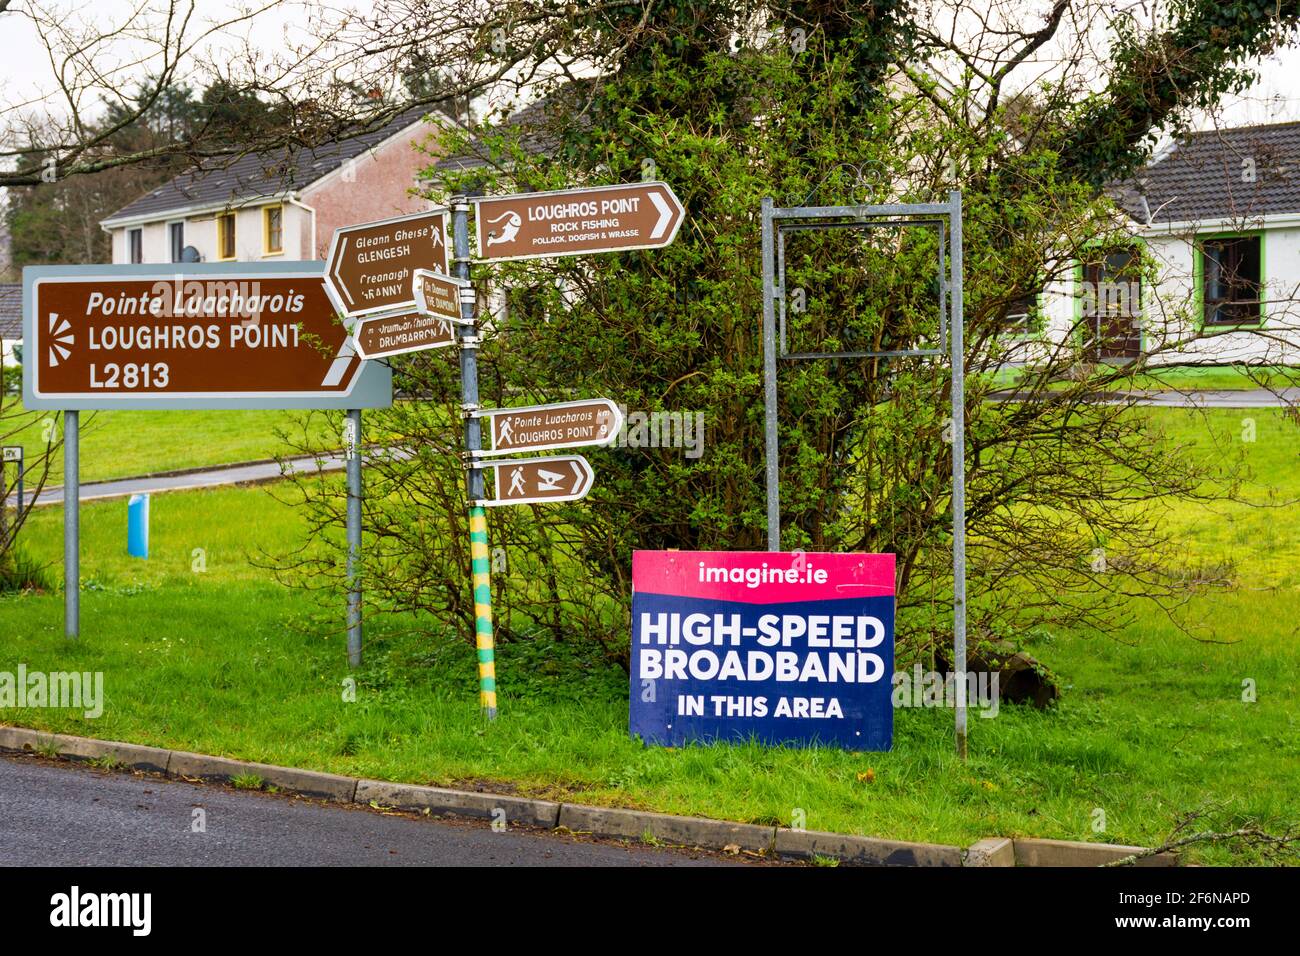 Beschilderung für Imagine.ie, High Speed Broadband in diesem Bereich. Ländliche Konnektivität in Irland. Stockfoto